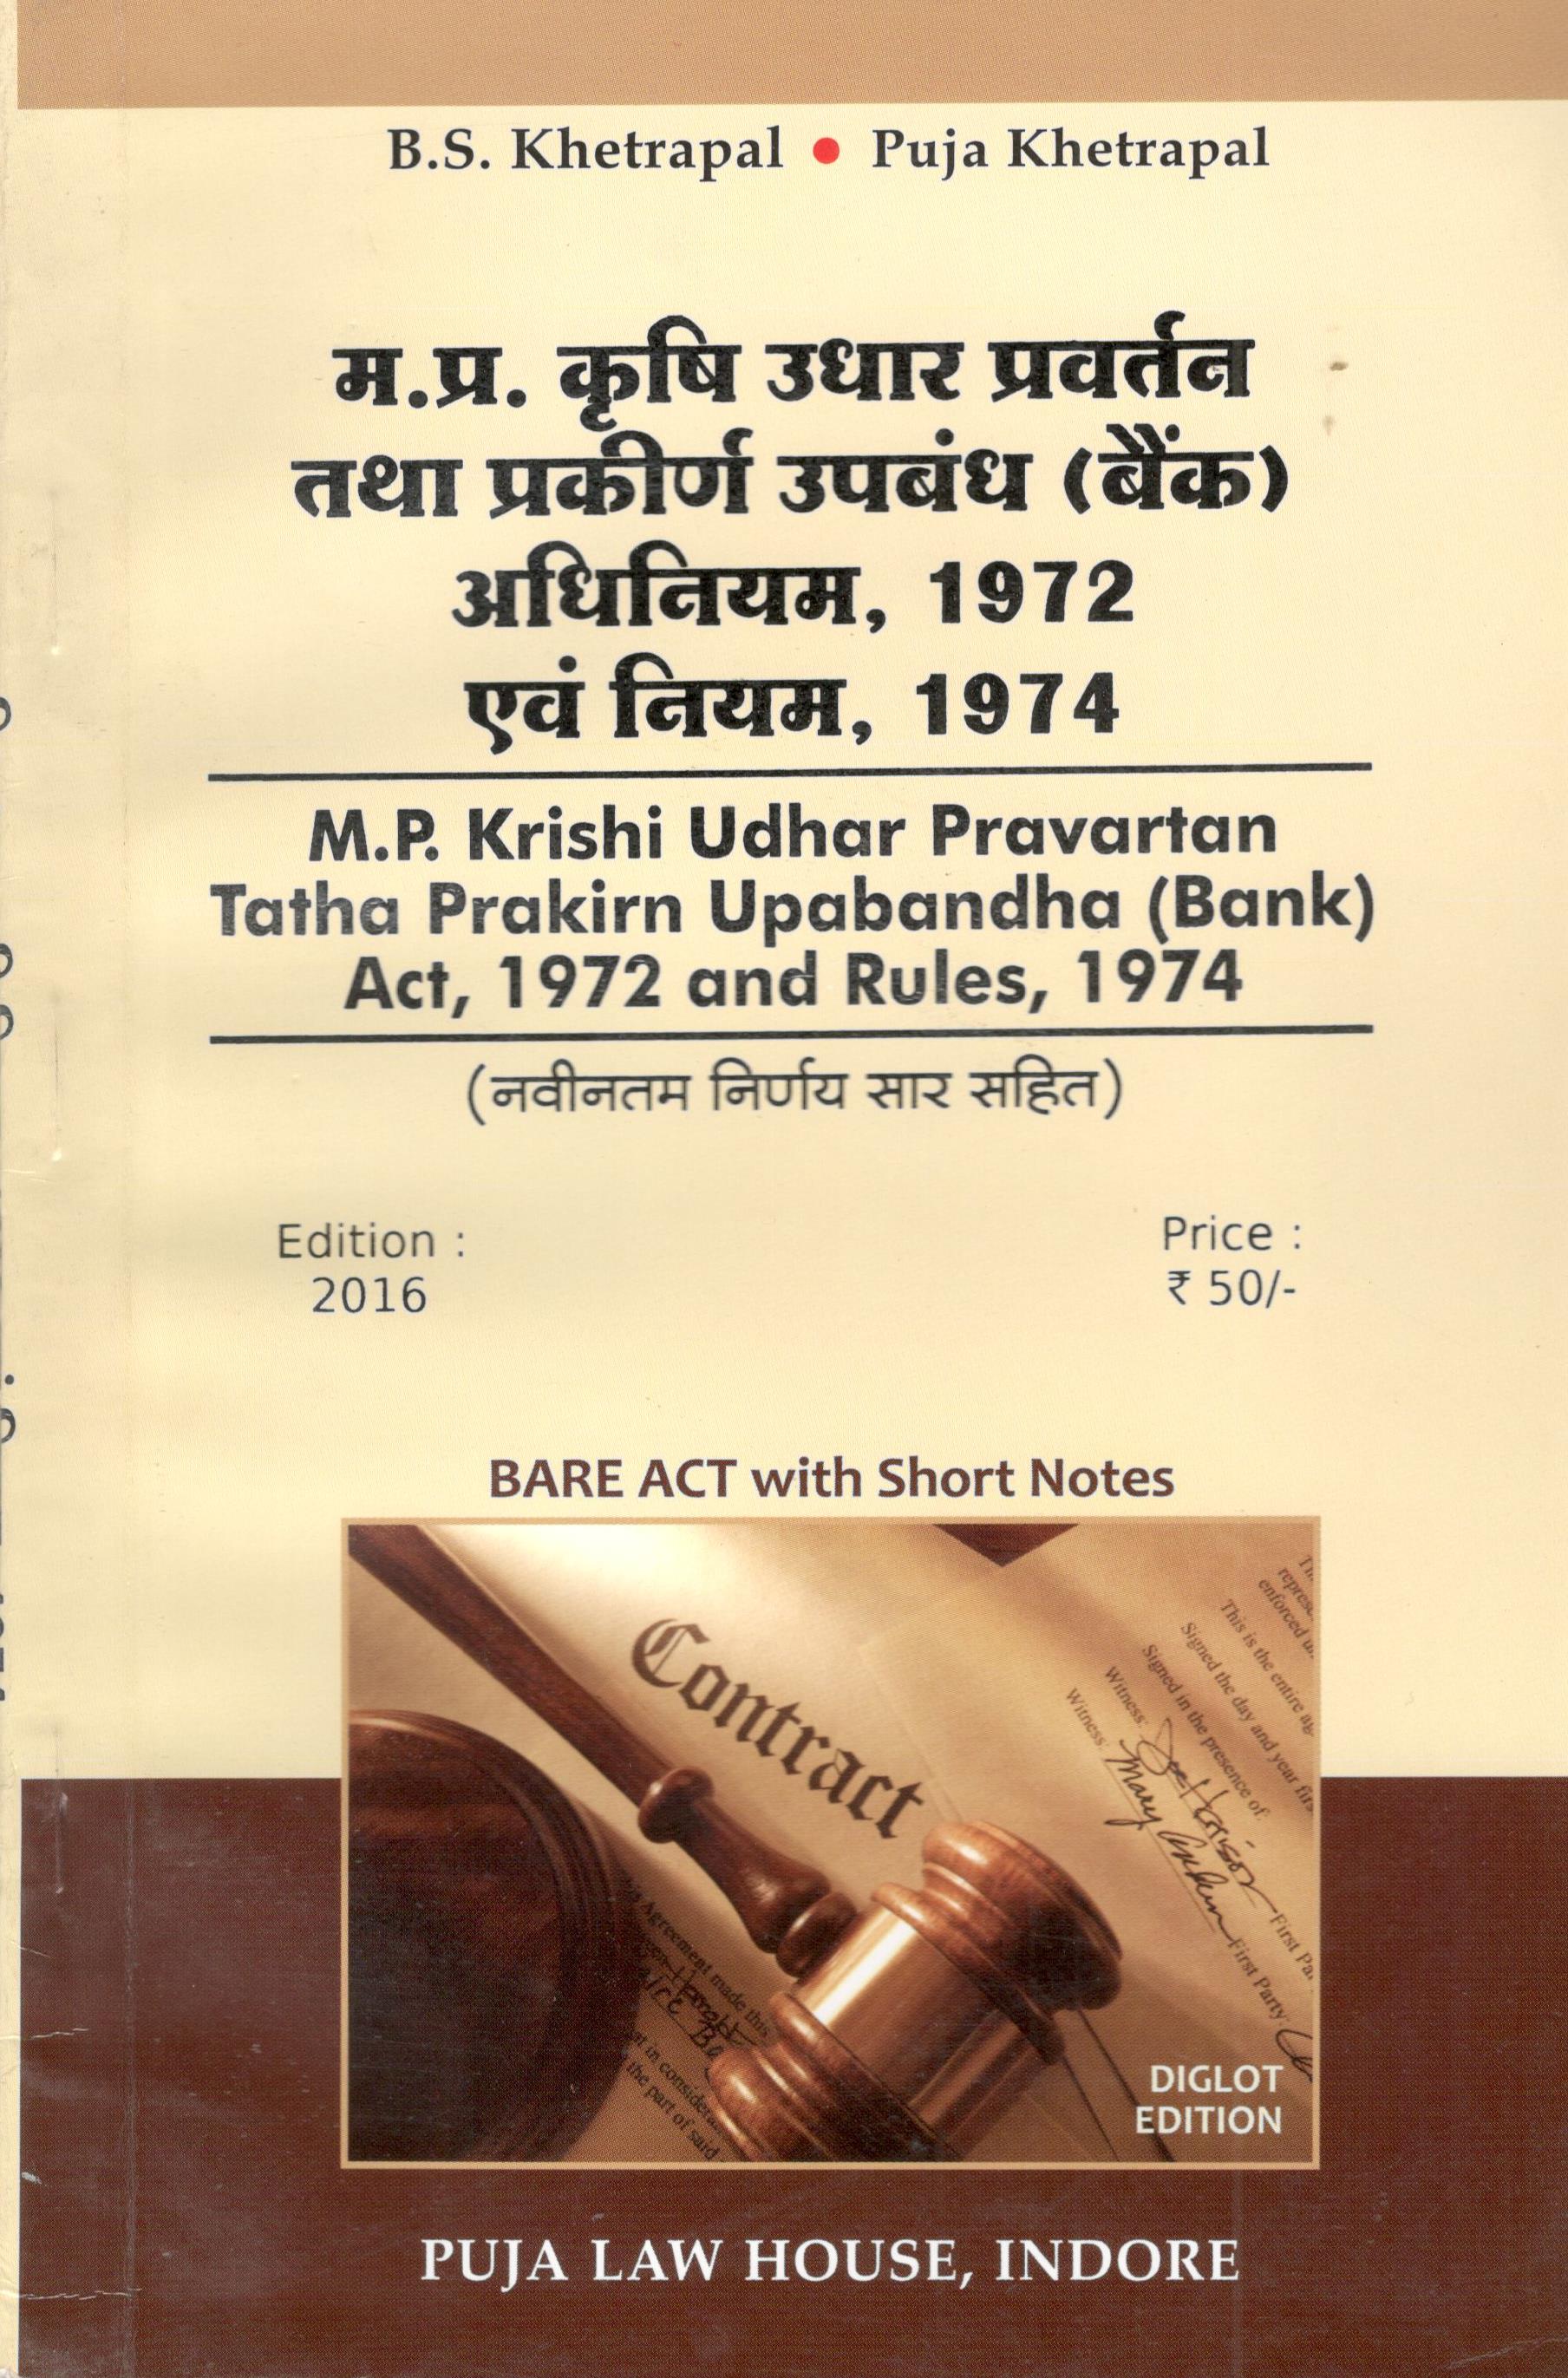 मध्य प्रदेश कृषि उधार प्रवर्तन एवं प्रकीर्ण उपबंध (बैंक) अधिनियम, 1972 एवं नियम, 1974 / Madhya Pradesh Krishi Udhar Pravartan tatha prakiran Upabandha (Bank) Act, 1972 & Rules, 1974		